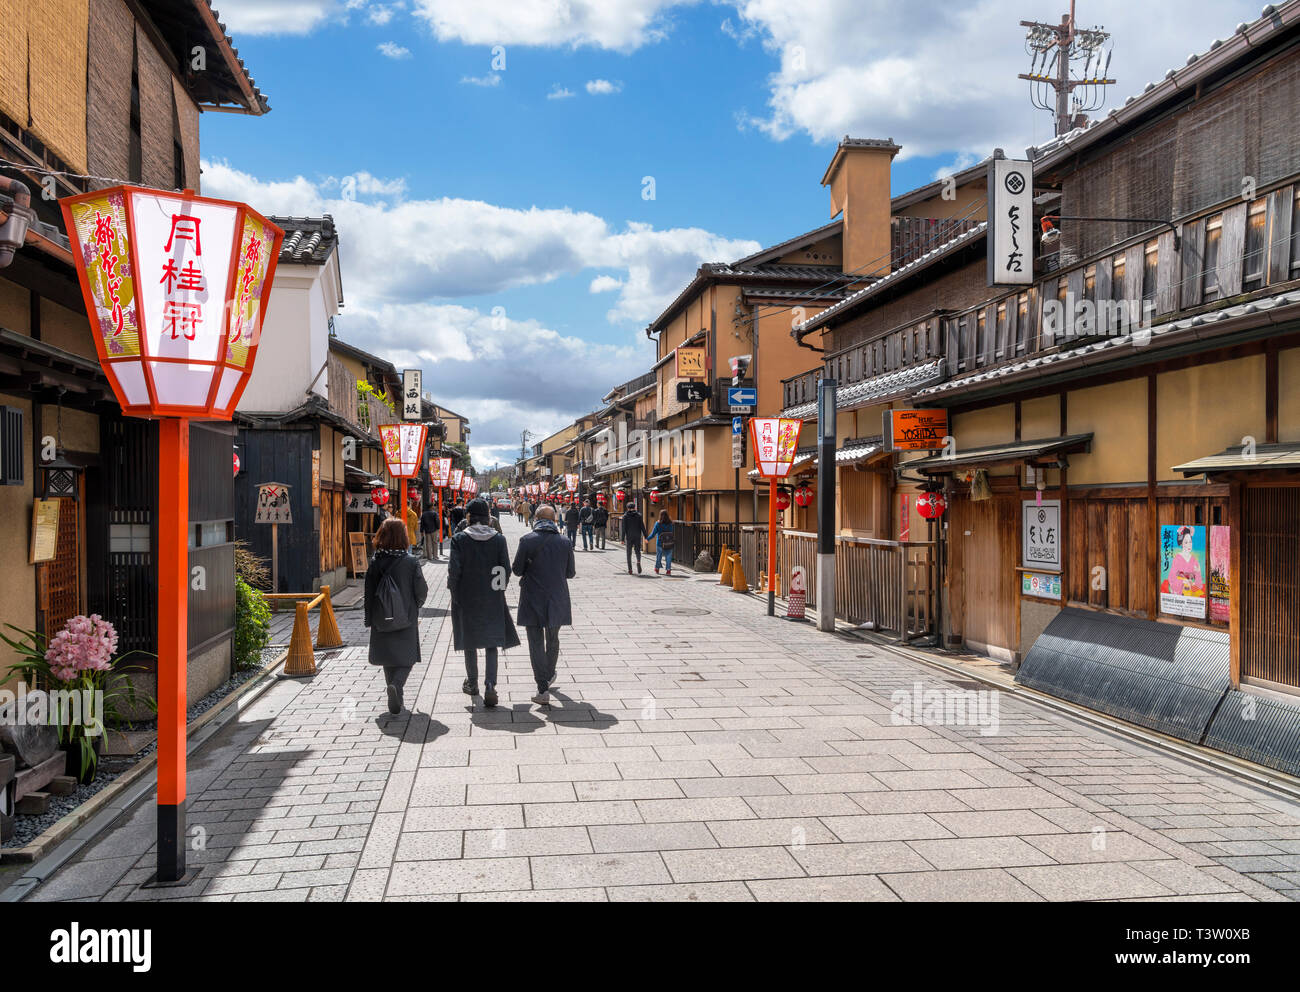 Tradizionali edifici giapponesi su Hanamikoji-dori, una strada nello storico quartiere di Gion a Kyoto, Giappone Foto Stock